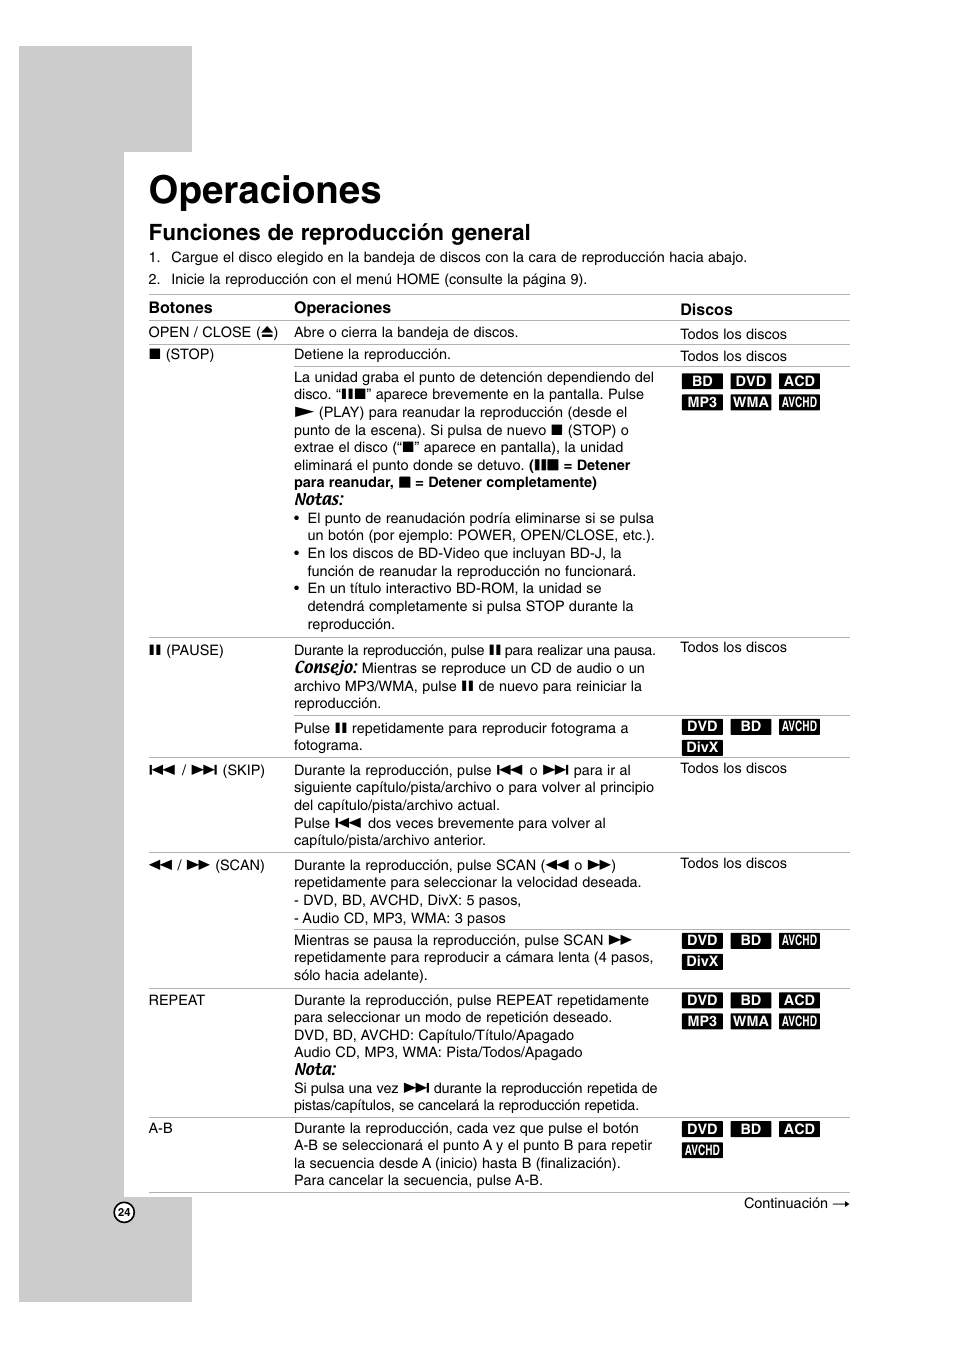 Operaciones, Funciones de reproducción general | LG BD300 Manual del usuario | Página 24 / 40